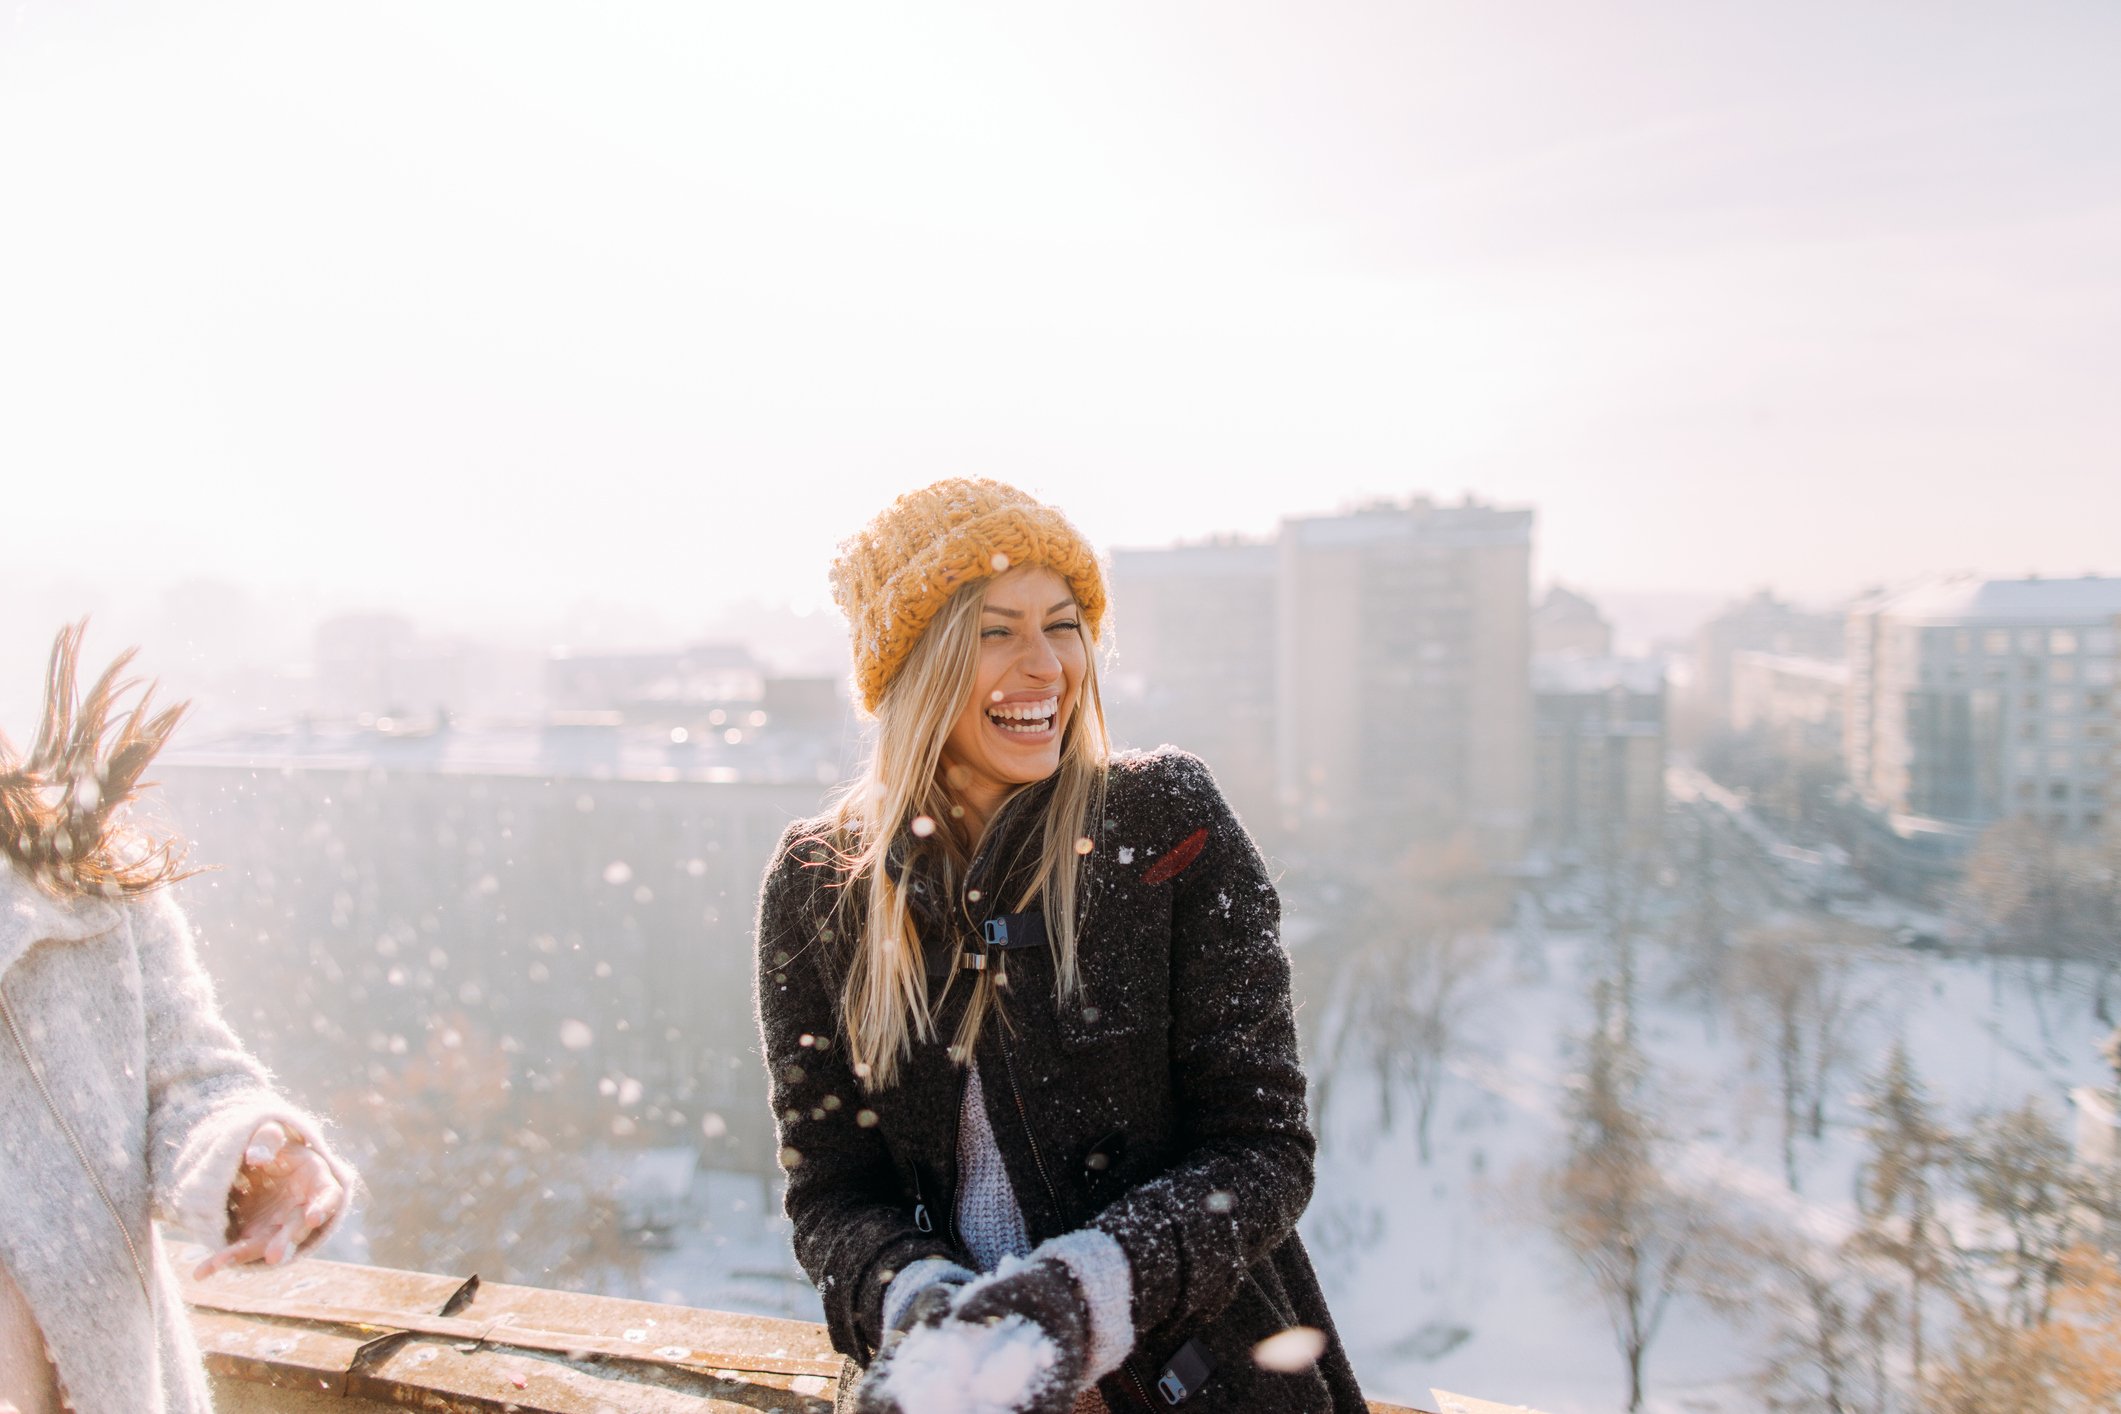 Une femme heureuse sous la neige | source : Getty Images